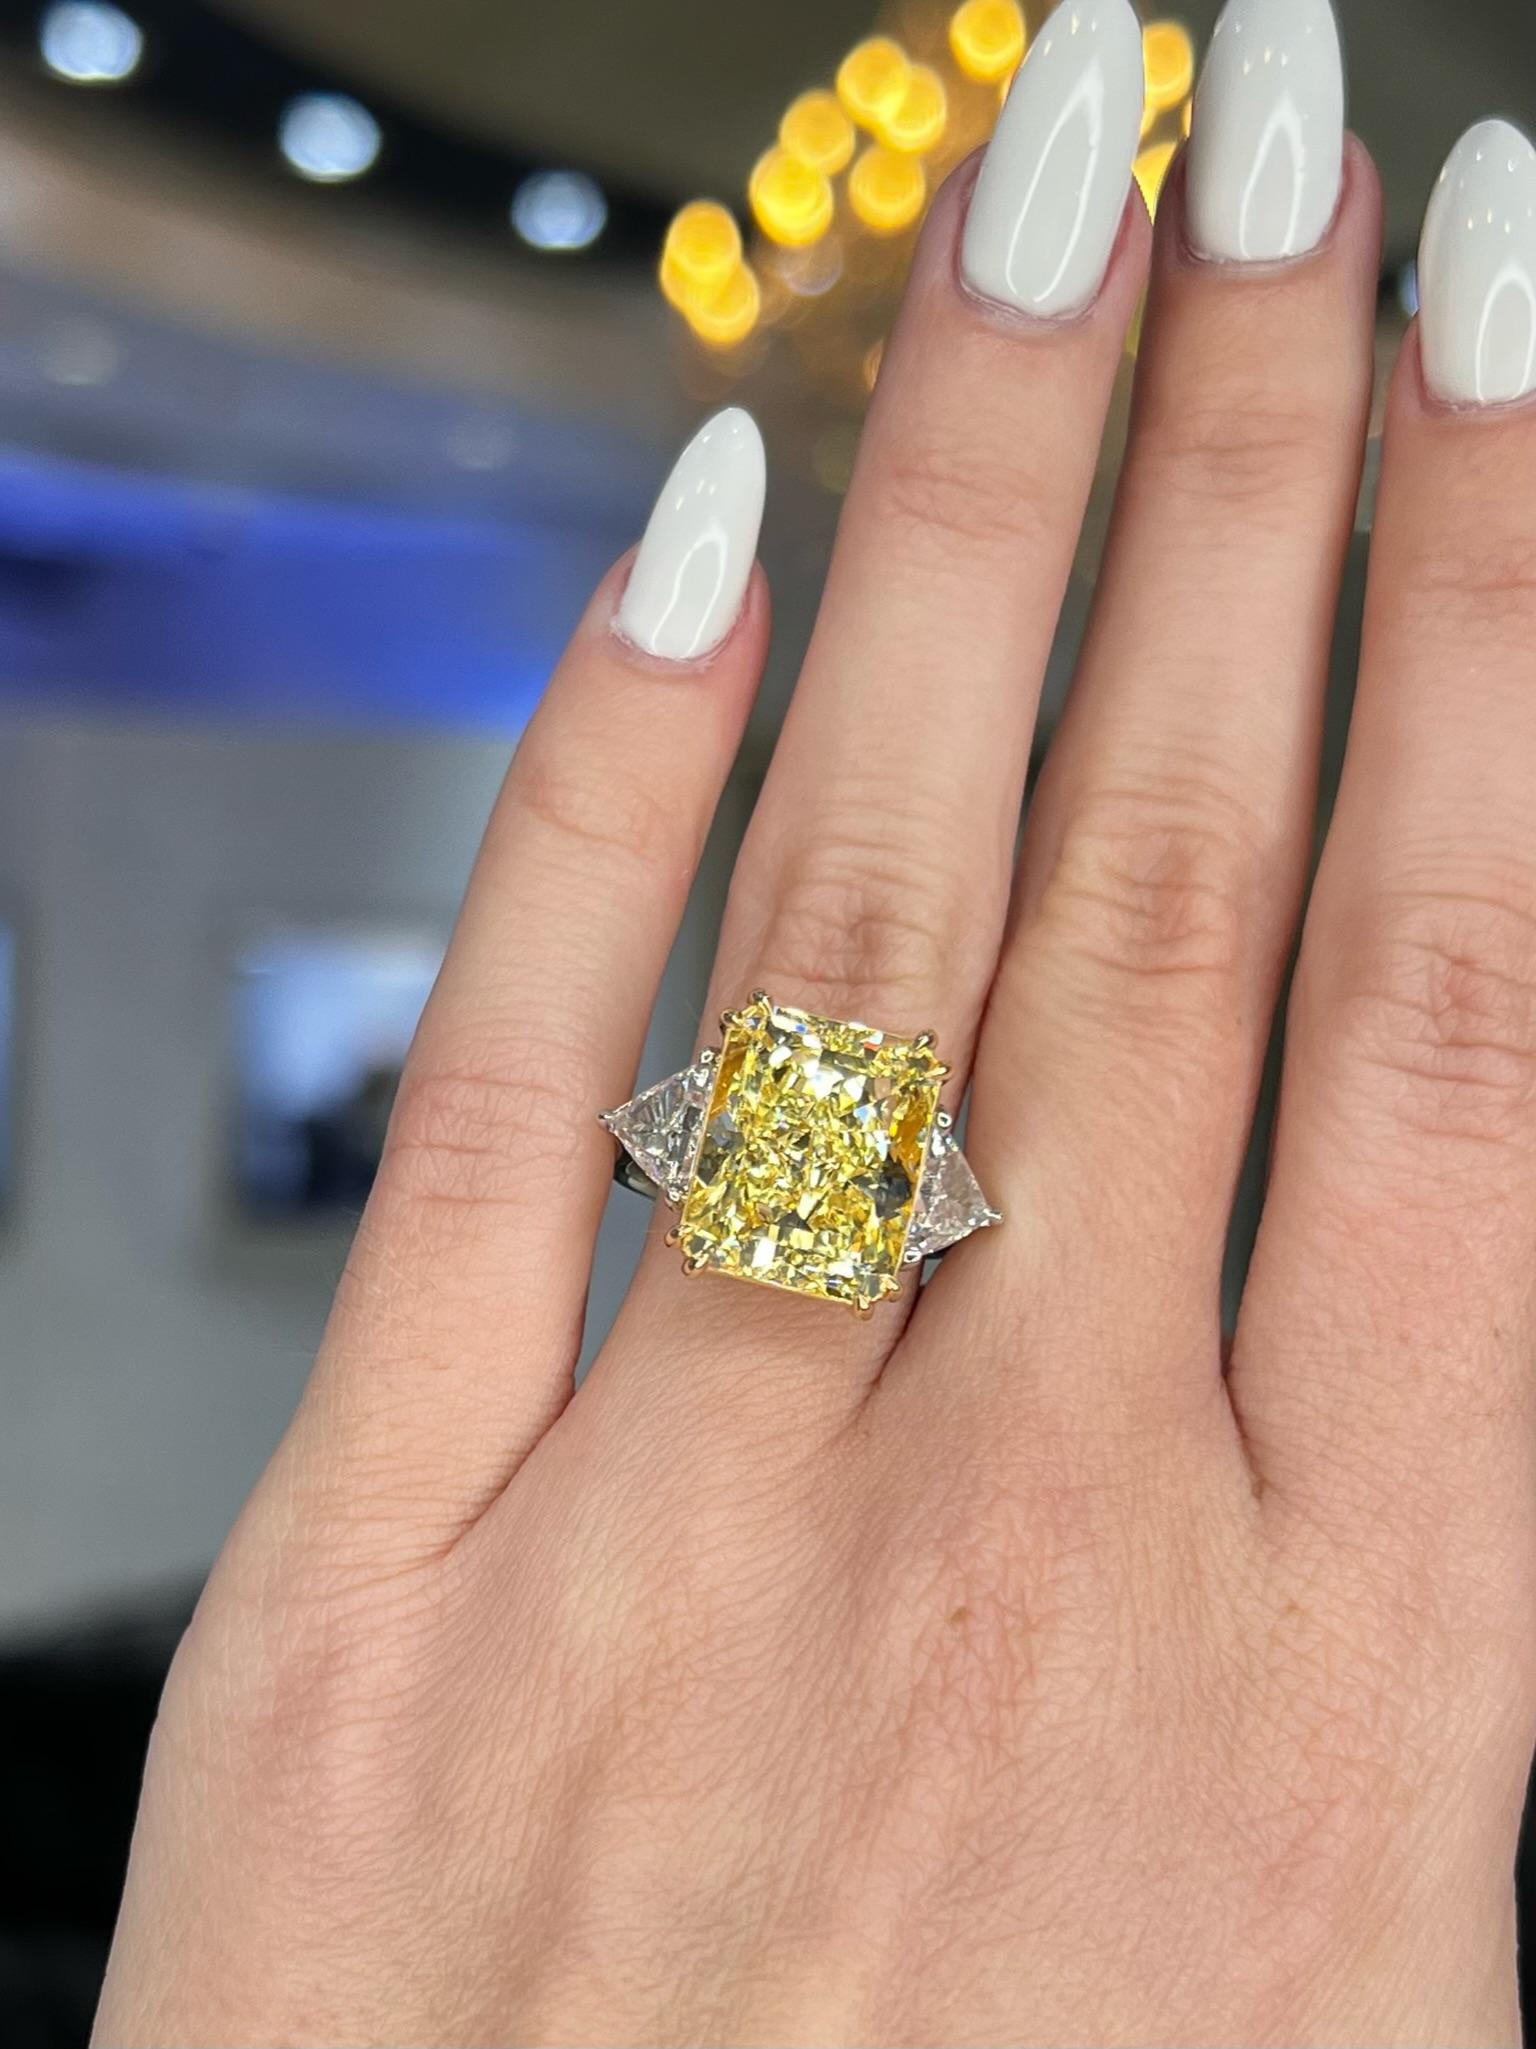 David Rosenberg 10.41 Radiant Fancy Yellow VS1 GIA Diamond Engagement Ring For Sale 4